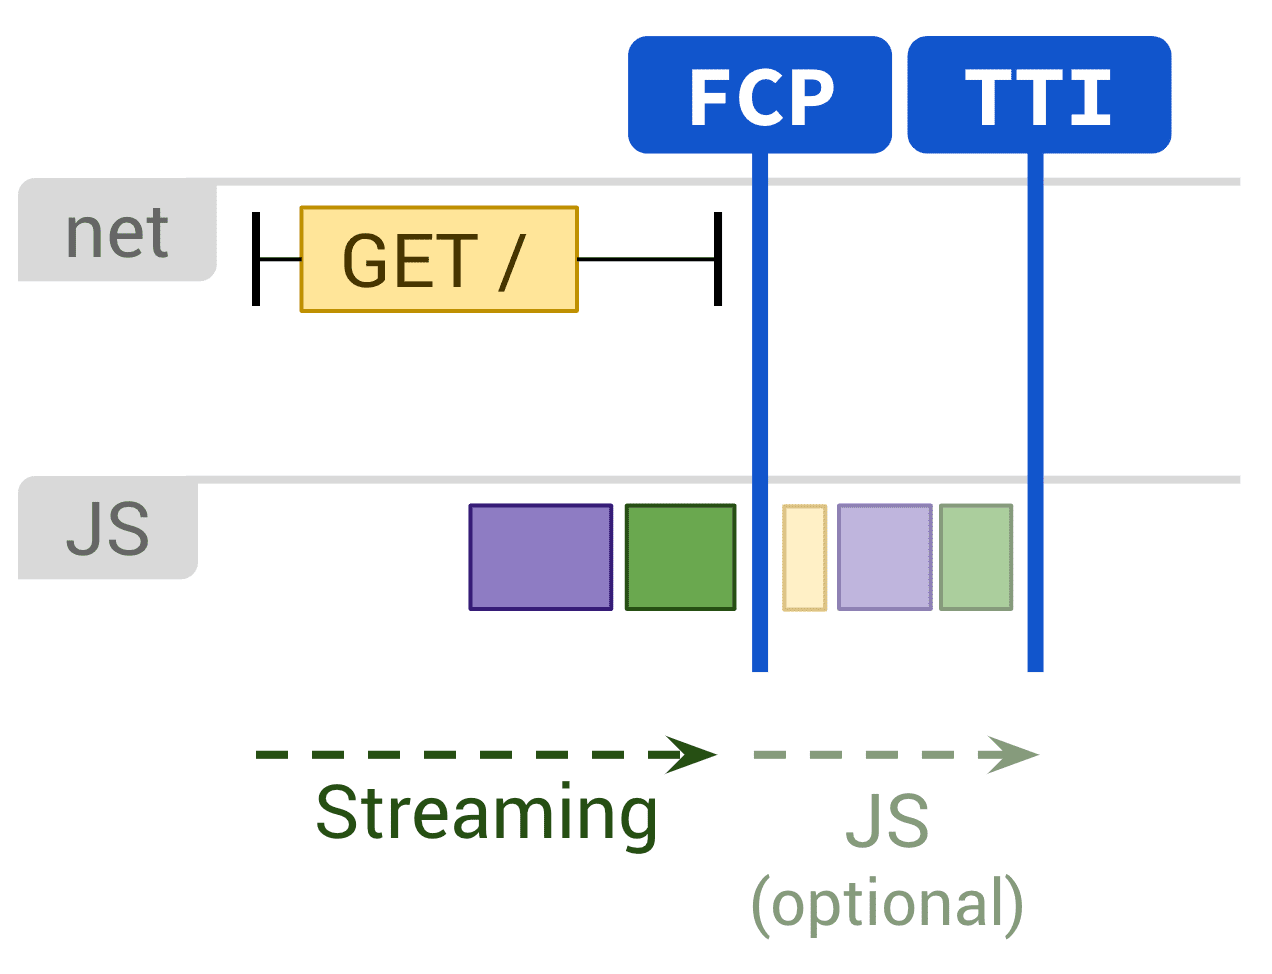 Sơ đồ cho thấy việc kết xuất tĩnh và thực thi JS không bắt buộc ảnh hưởng đến FCP và TTI.